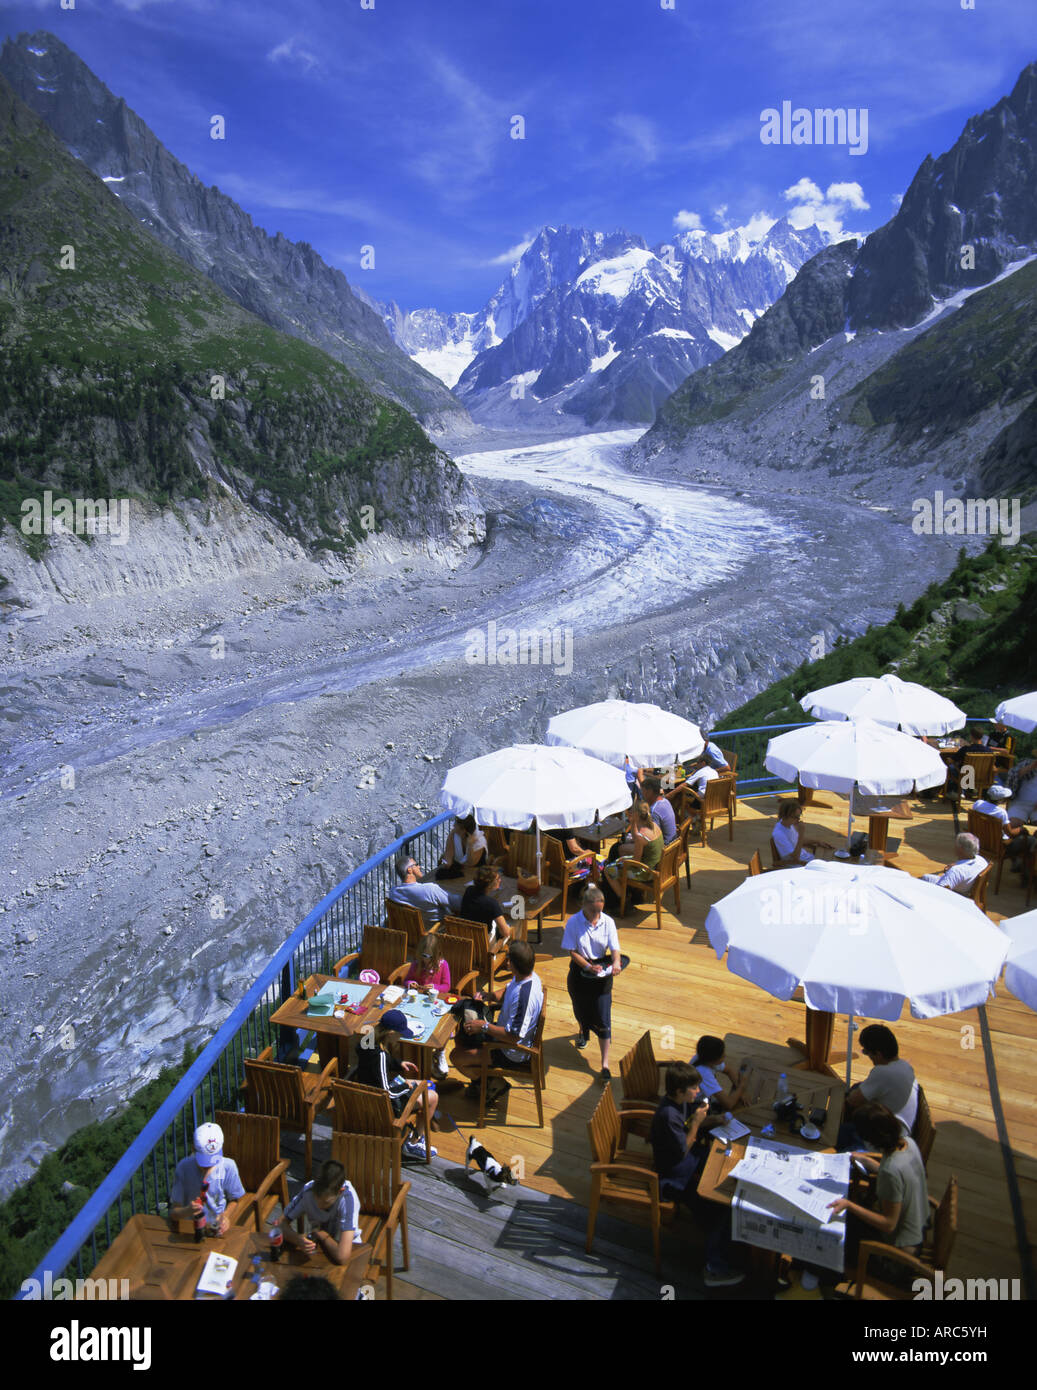 Cafe mit Blick auf Glace de Mer Gletscher, Chamonix, Französische Alpen, Rhone-Alpes, Frankreich, Europa Stockfoto